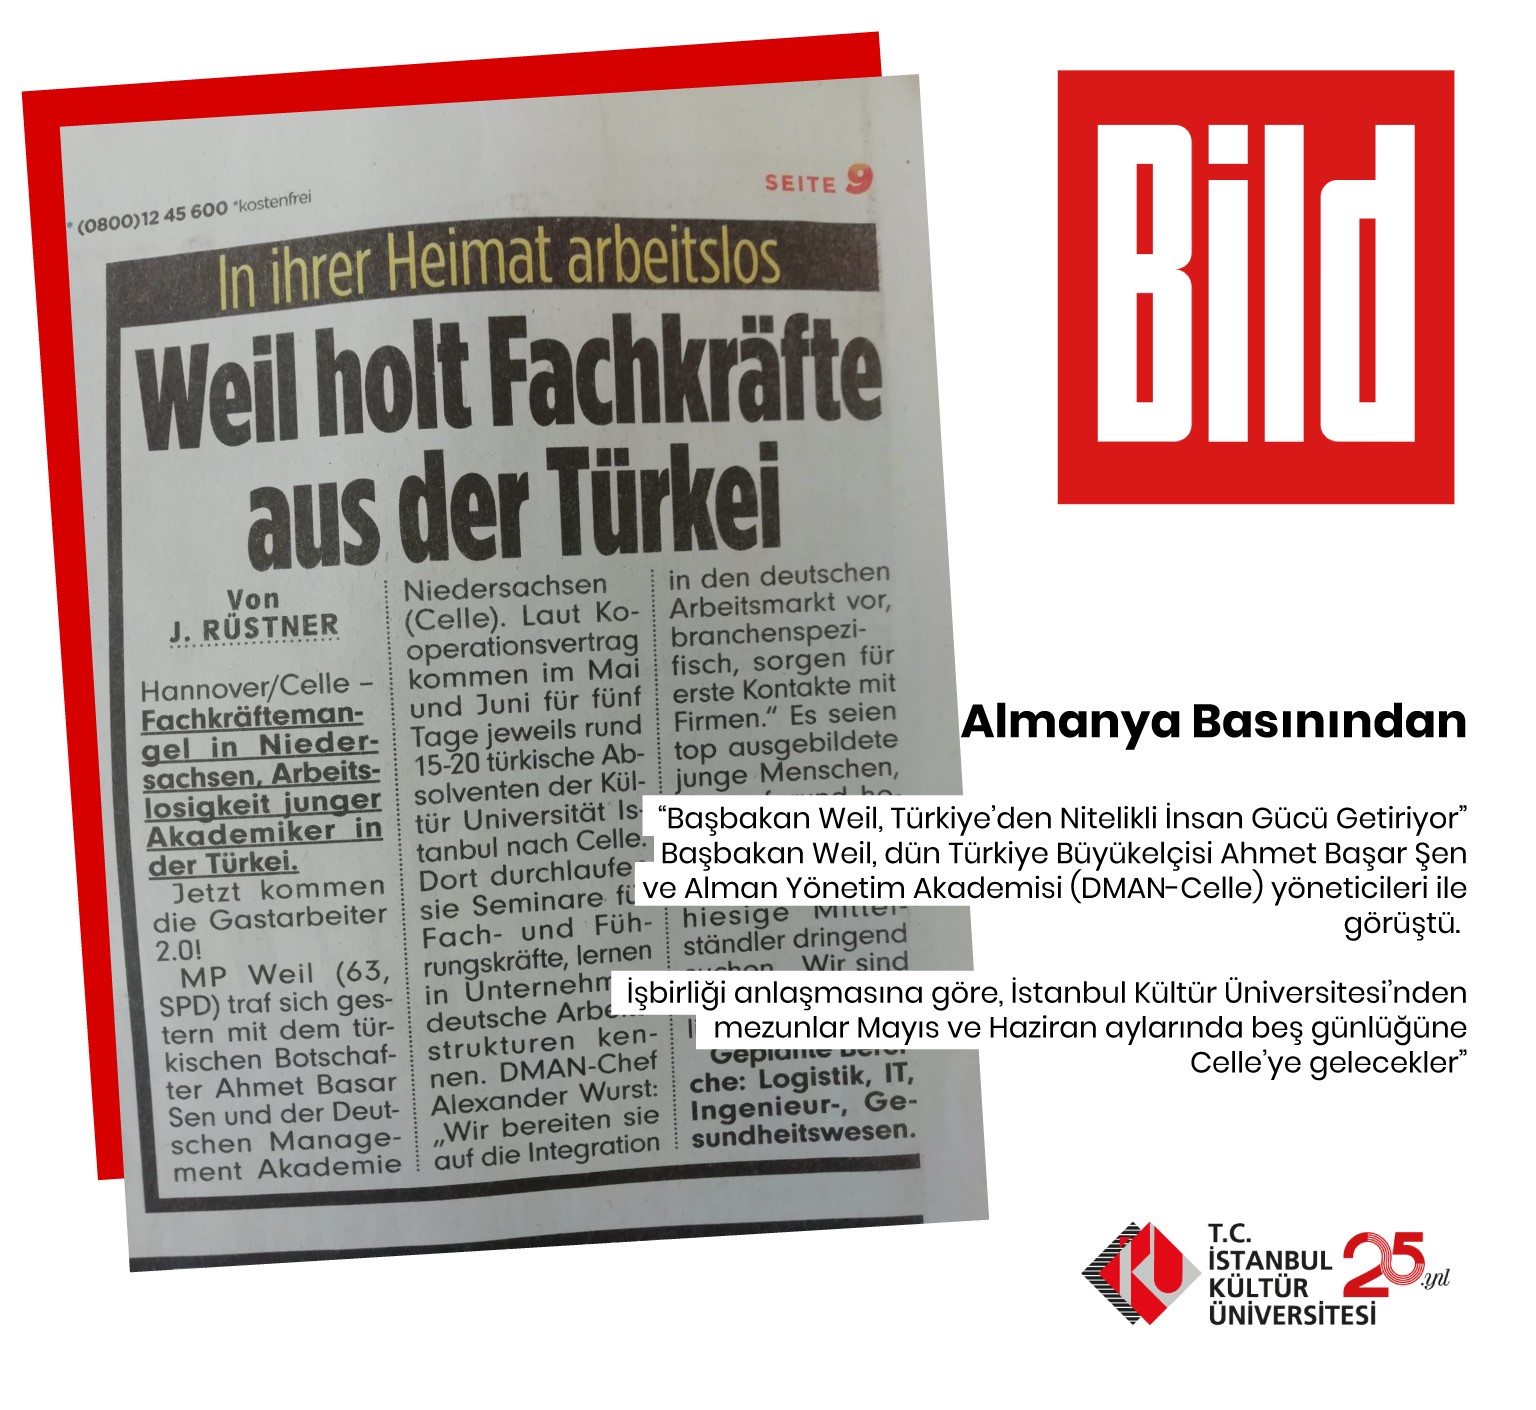 Almanya Bild Gazetesi’nde çıkan iş birliği haberi